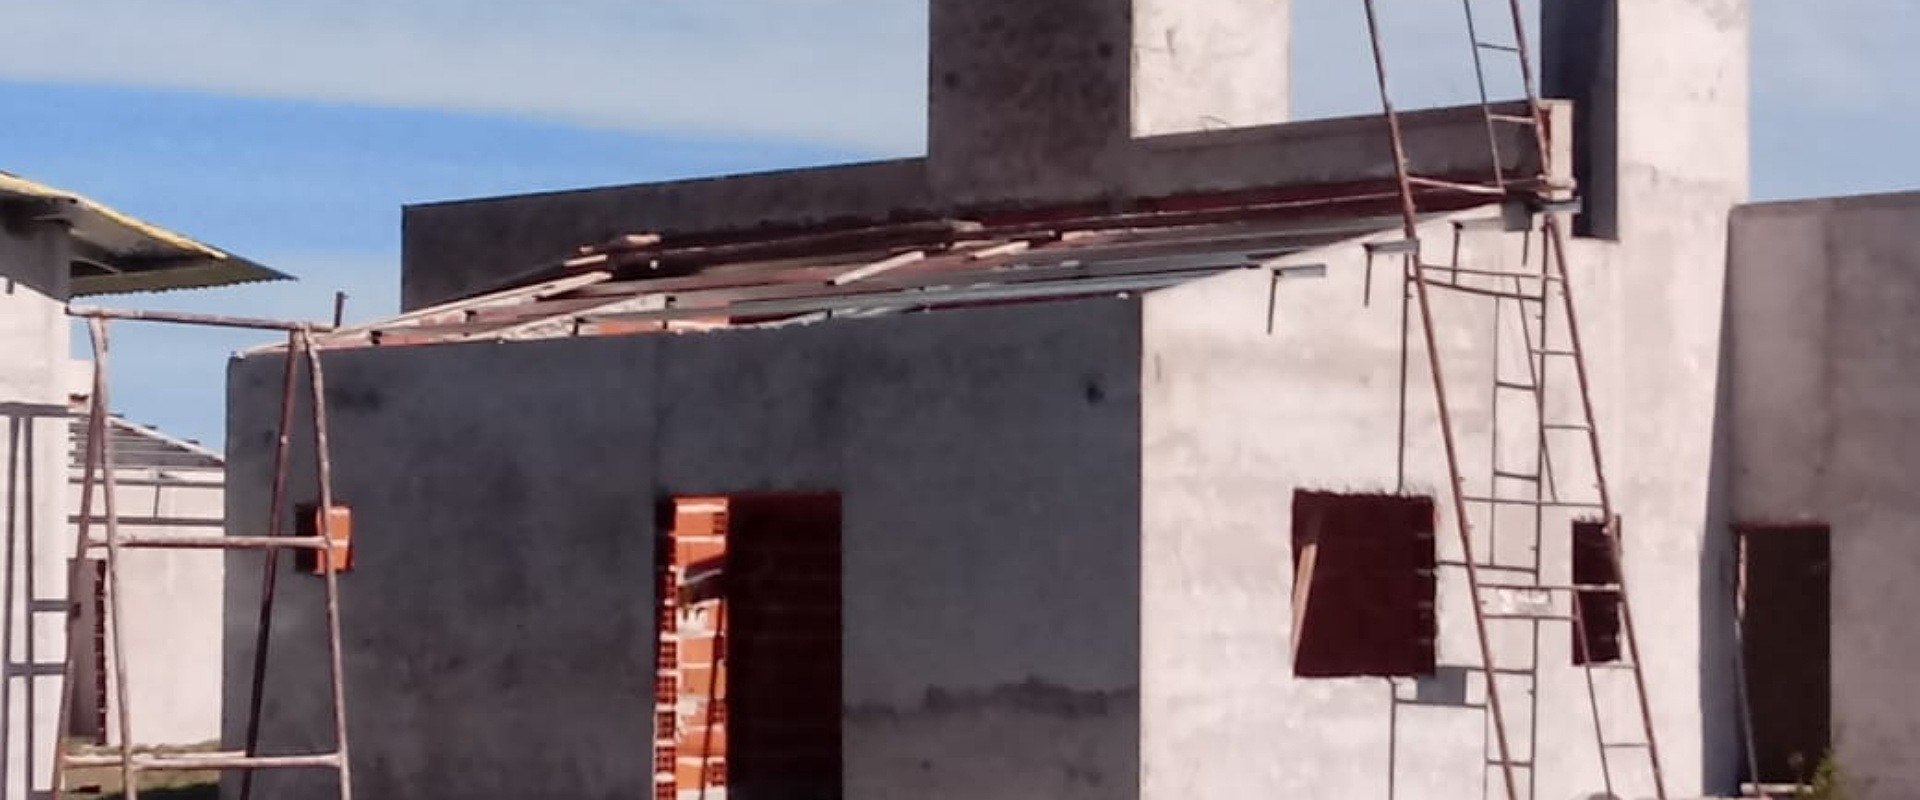 Se construyen 51 viviendas en Concepción del Uruguay, Caseros y Enrique Carbó